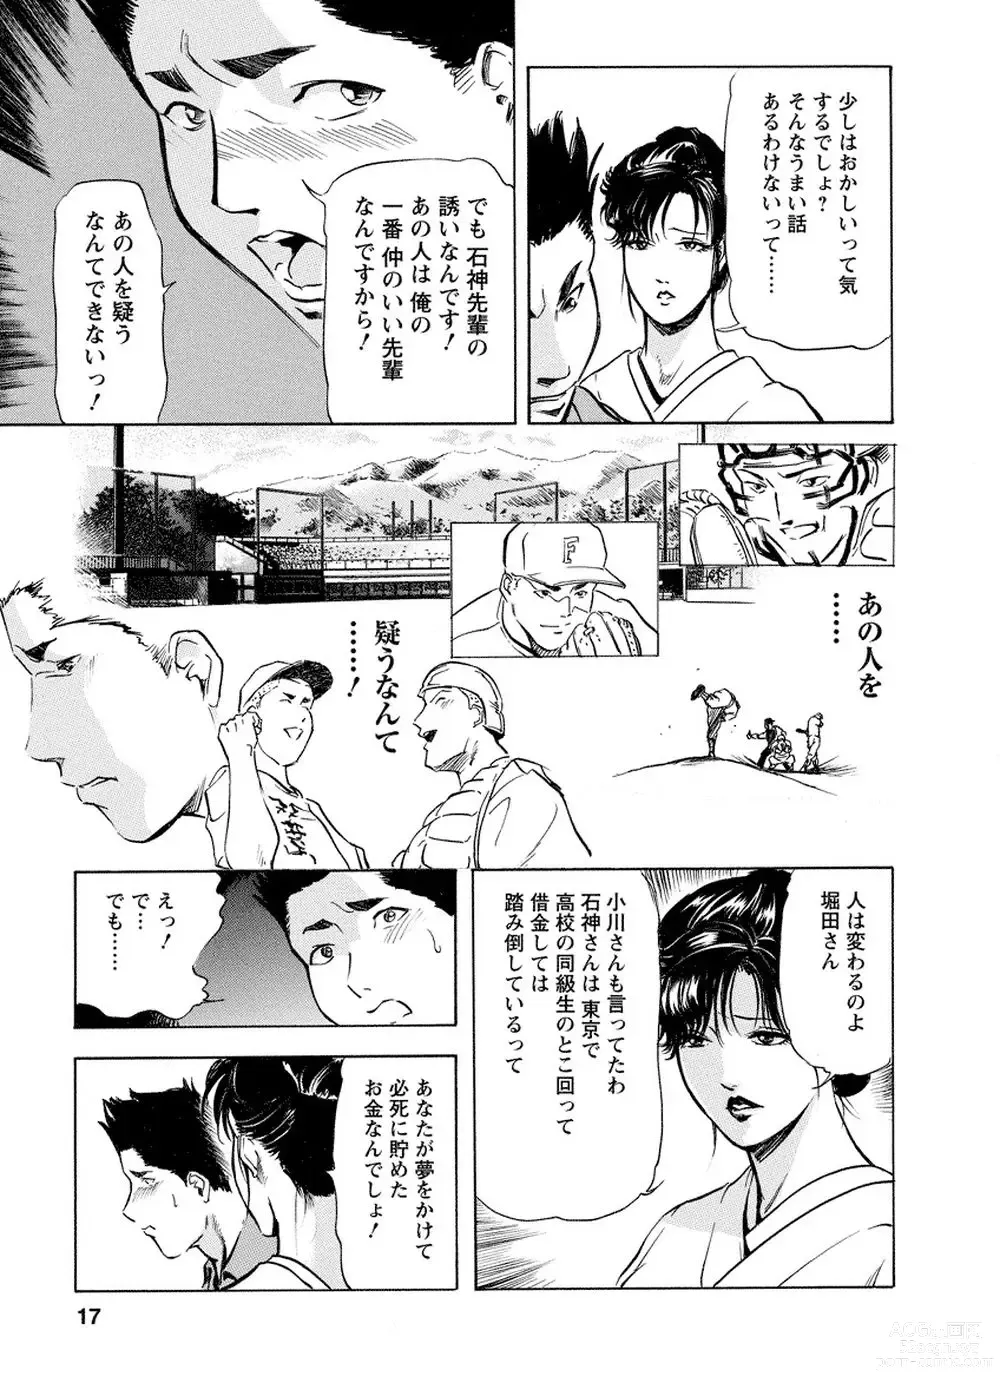 Page 16 of manga Tsuyako no Yu Vol.4